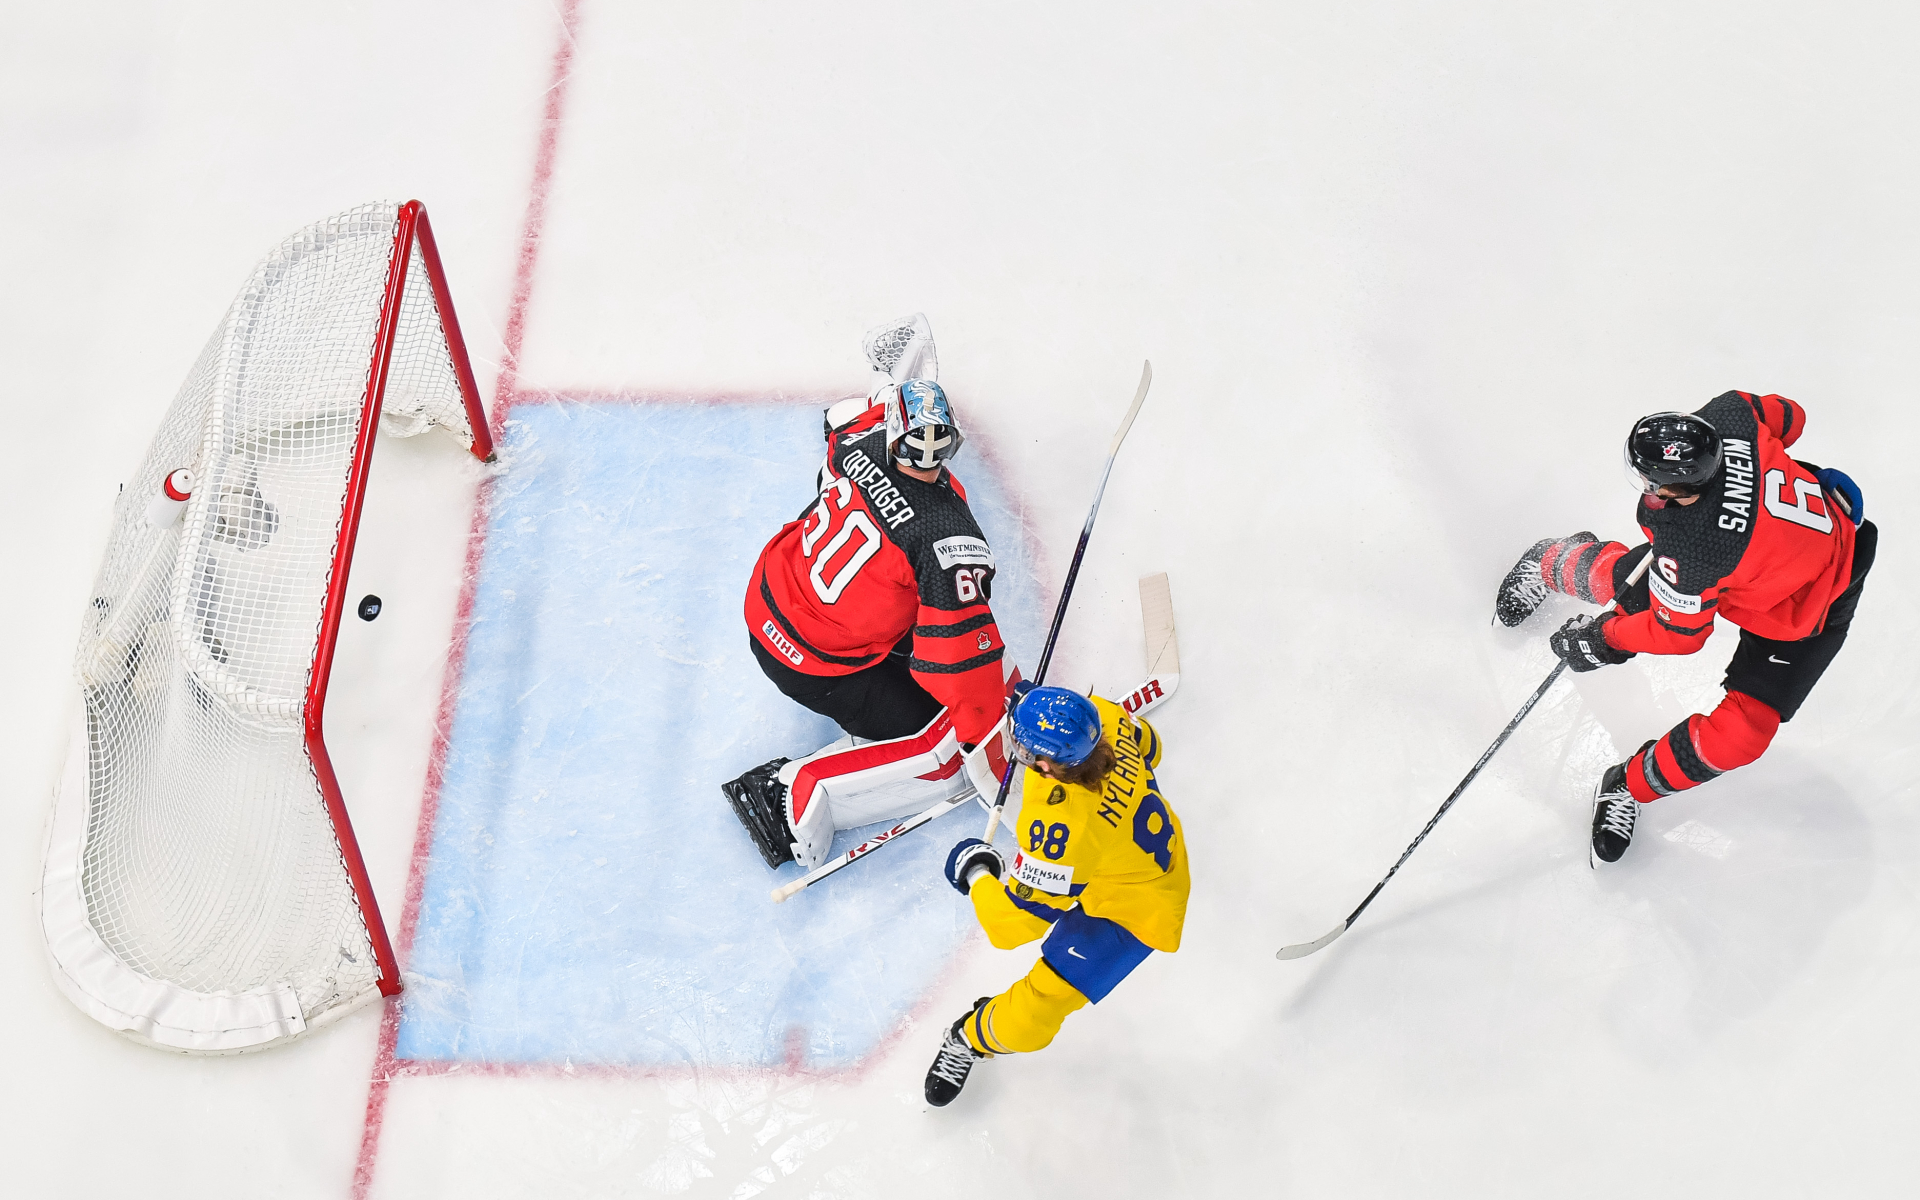 Сборная Финляндии стала первым финалистом чемпионата мира по хоккею ::  Хоккей :: РБК Спорт